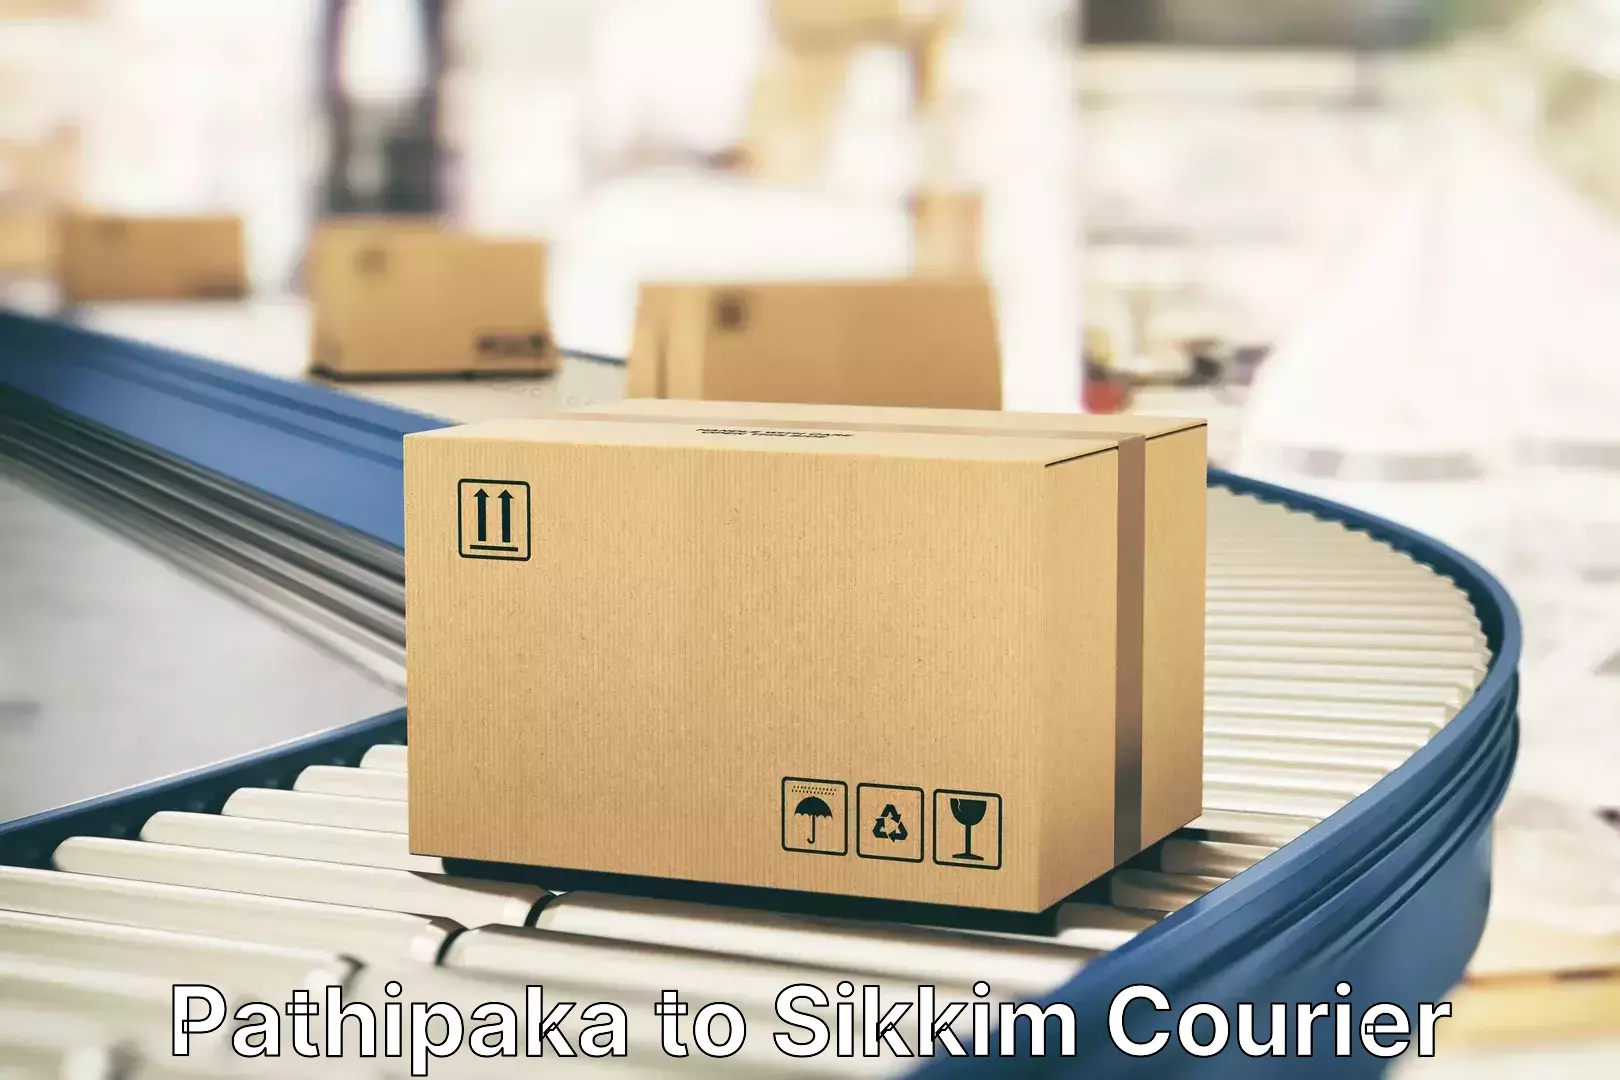 Luggage shipment tracking Pathipaka to Singtam